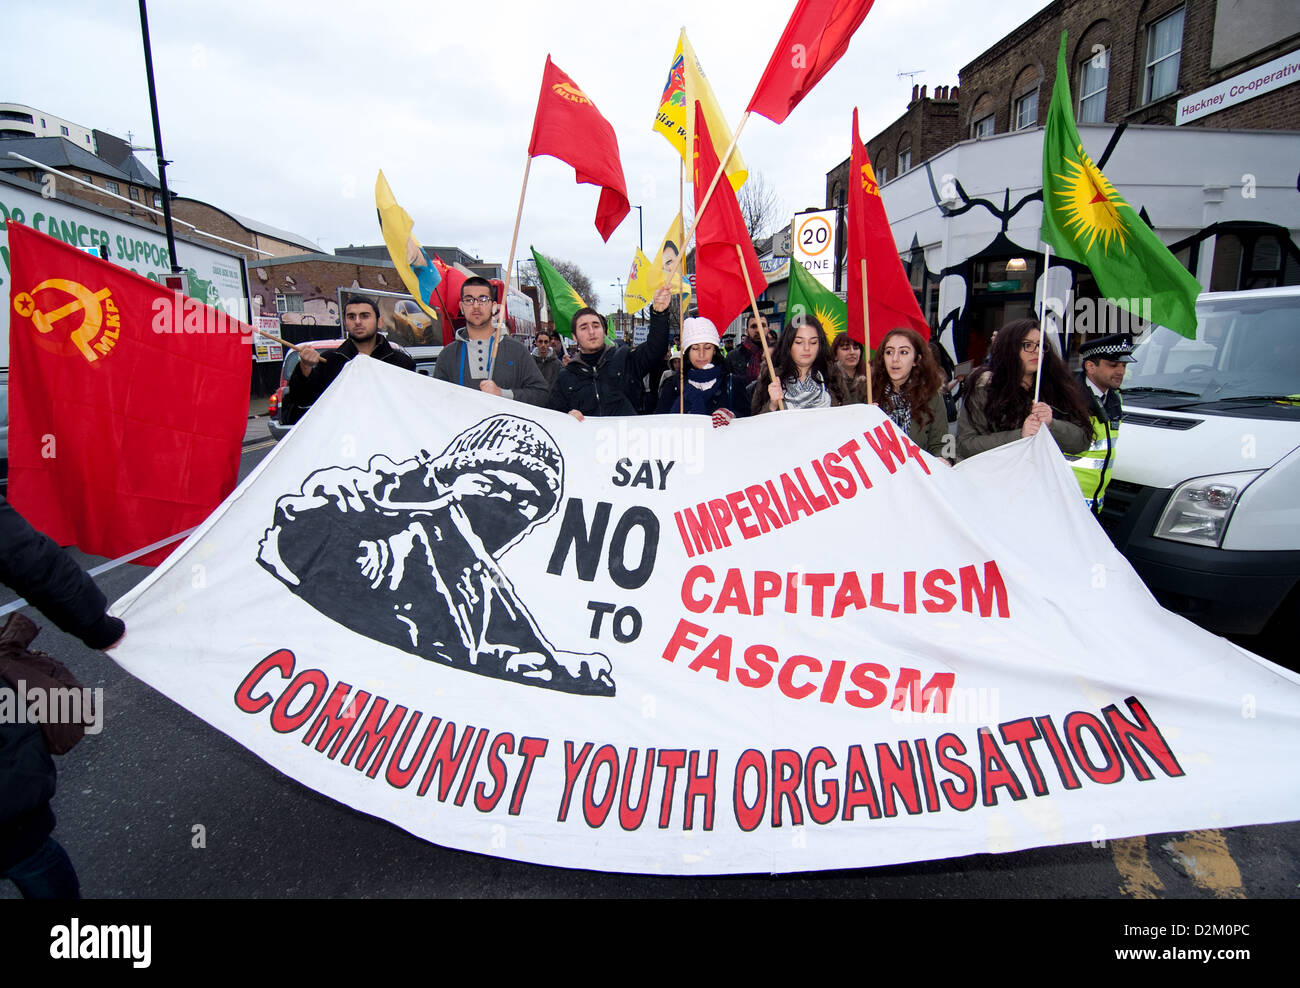 Kommunistischen Jugendorganisation anlässlich des ersten Jahrestages des Roboski Massaker Rallye in London marschieren. Stockfoto